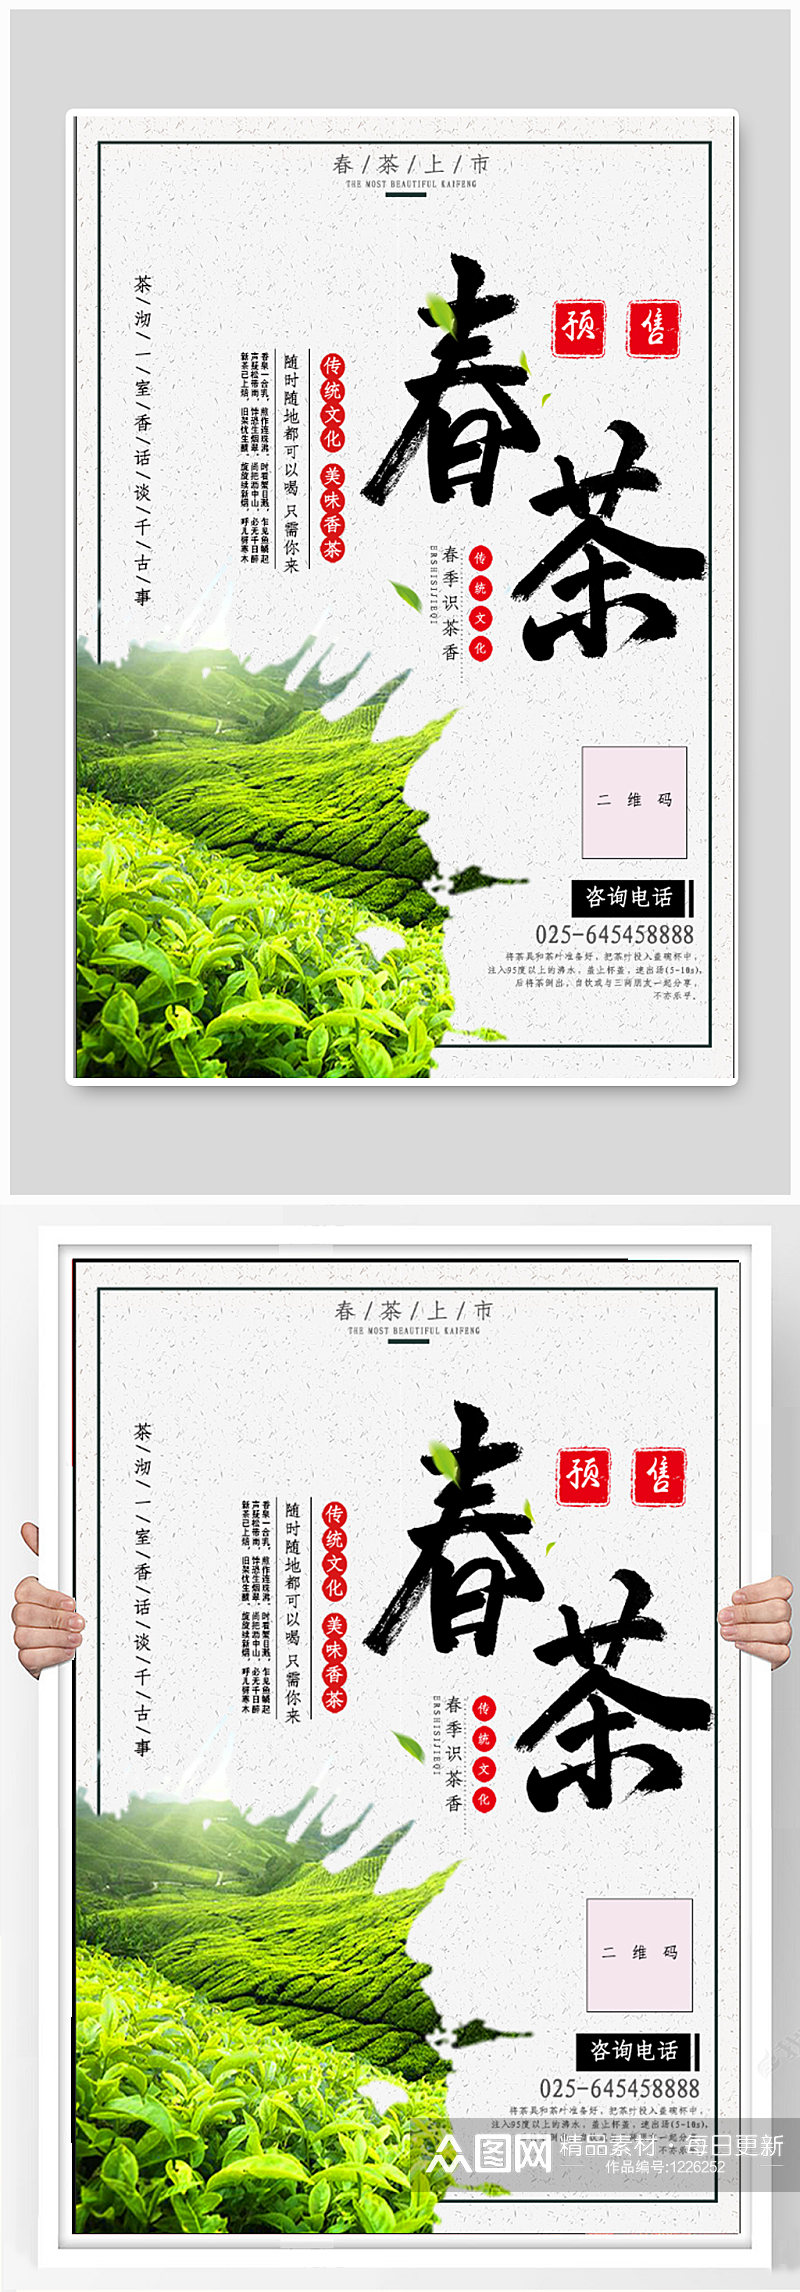 春茶节茶叶销售海报素材